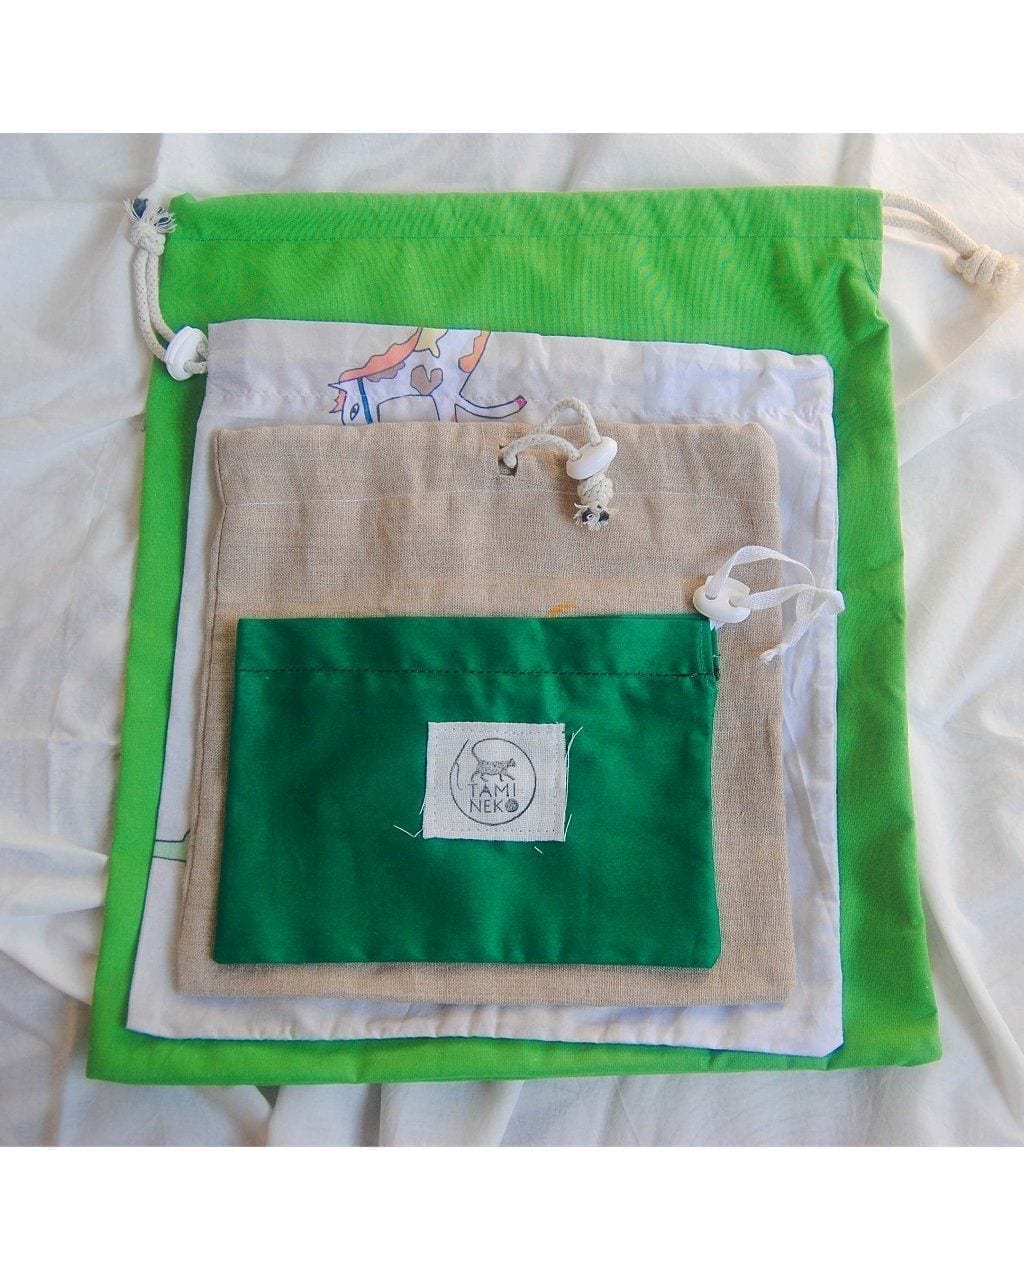 Bolsas ecológicas de tela - Handmade eco friendly bags for grocery shopping flat